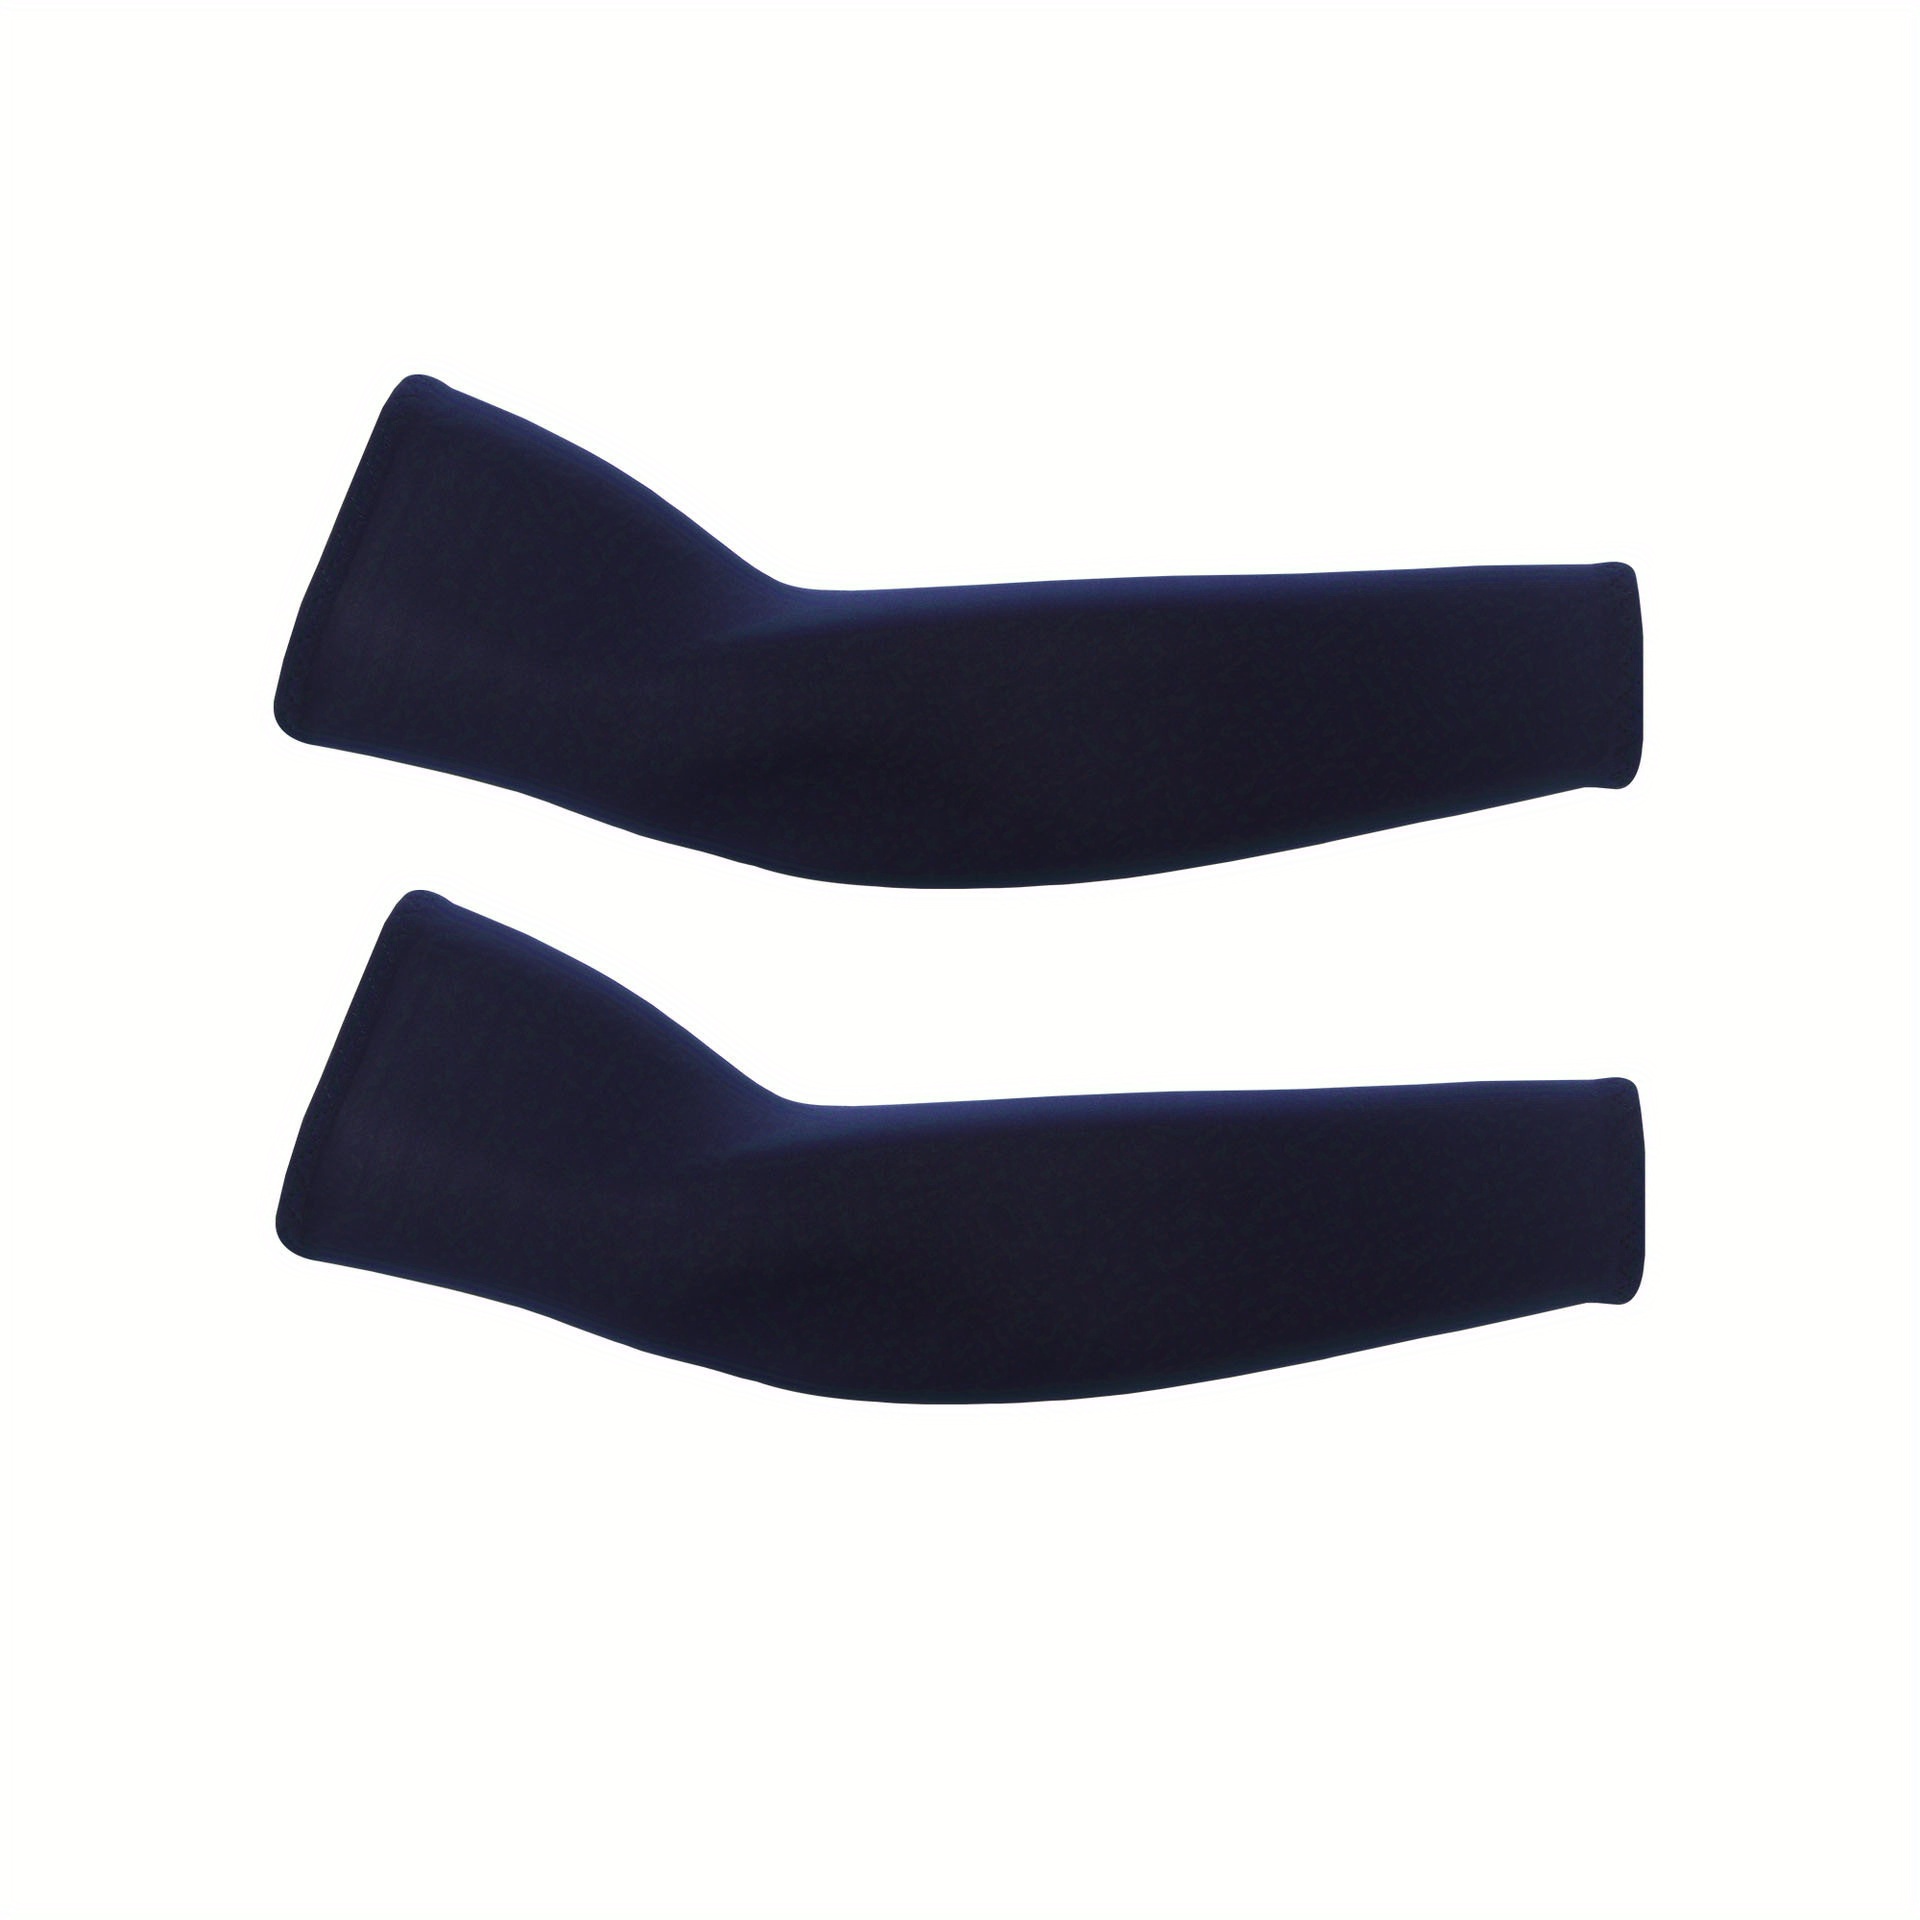 Arm Sleeves (2 Sleeves) - Navy